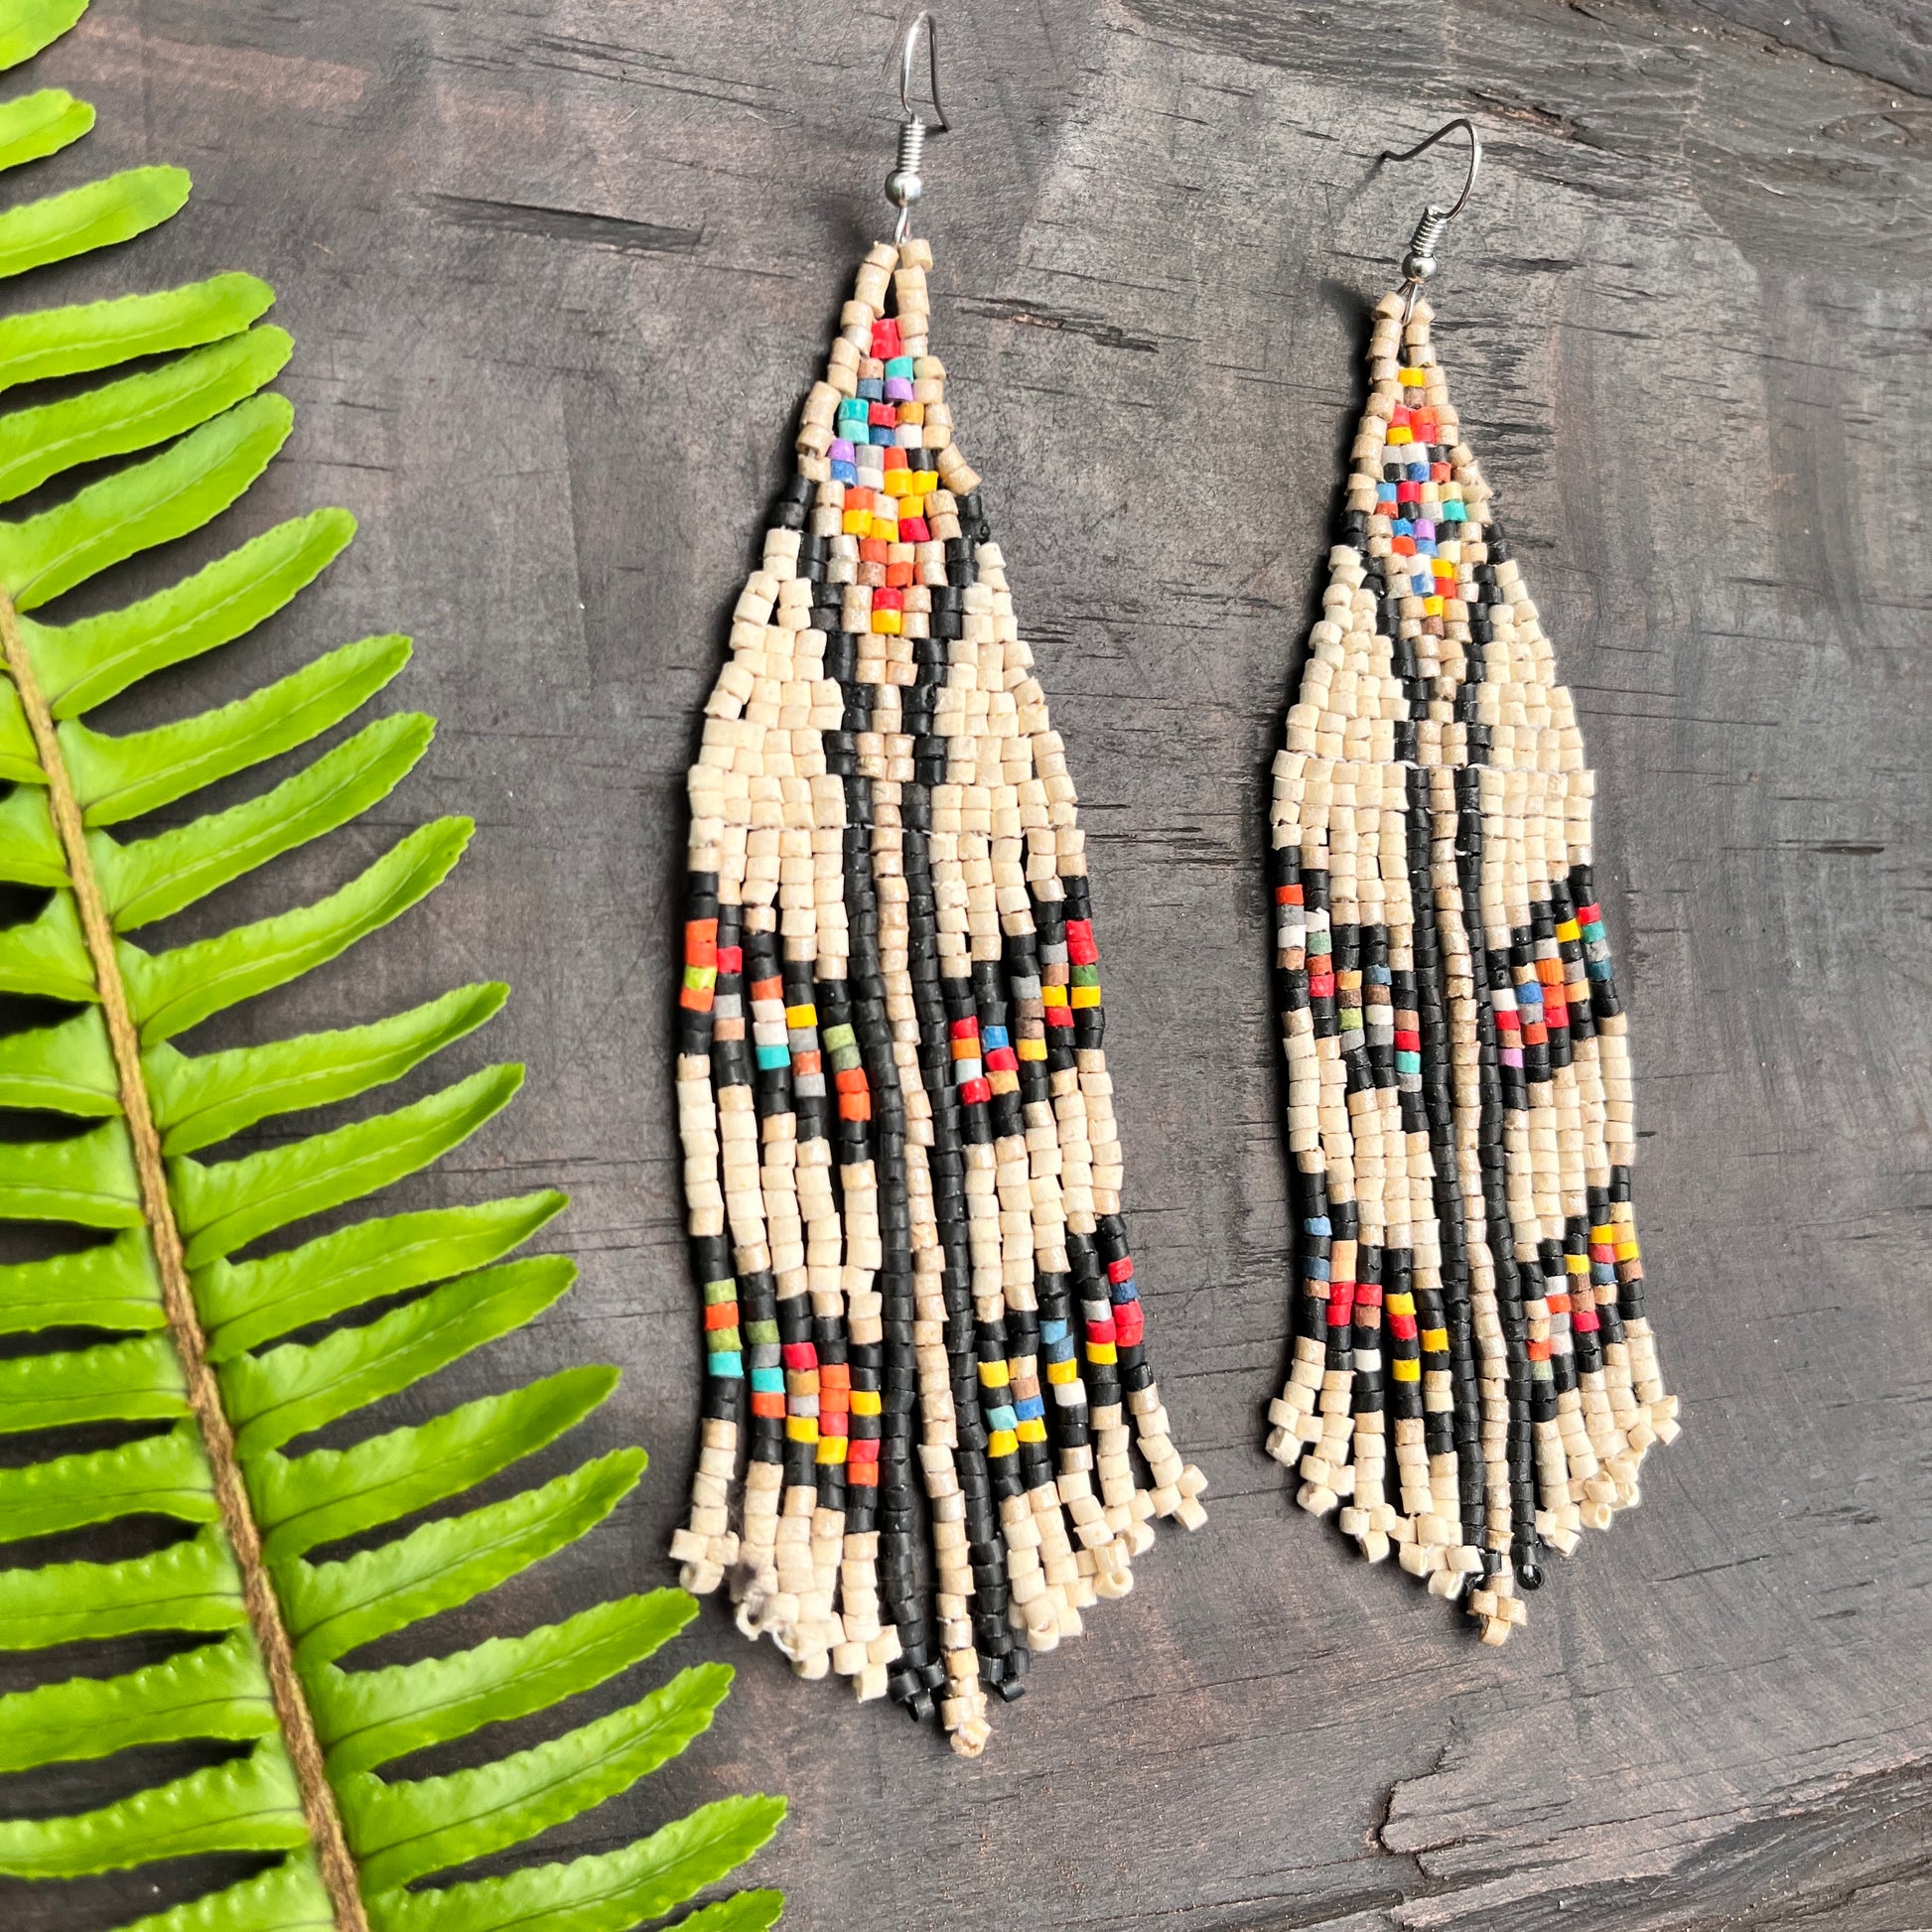 Western Seed Bead Fringe Earrings ~ Turquoise Navajo